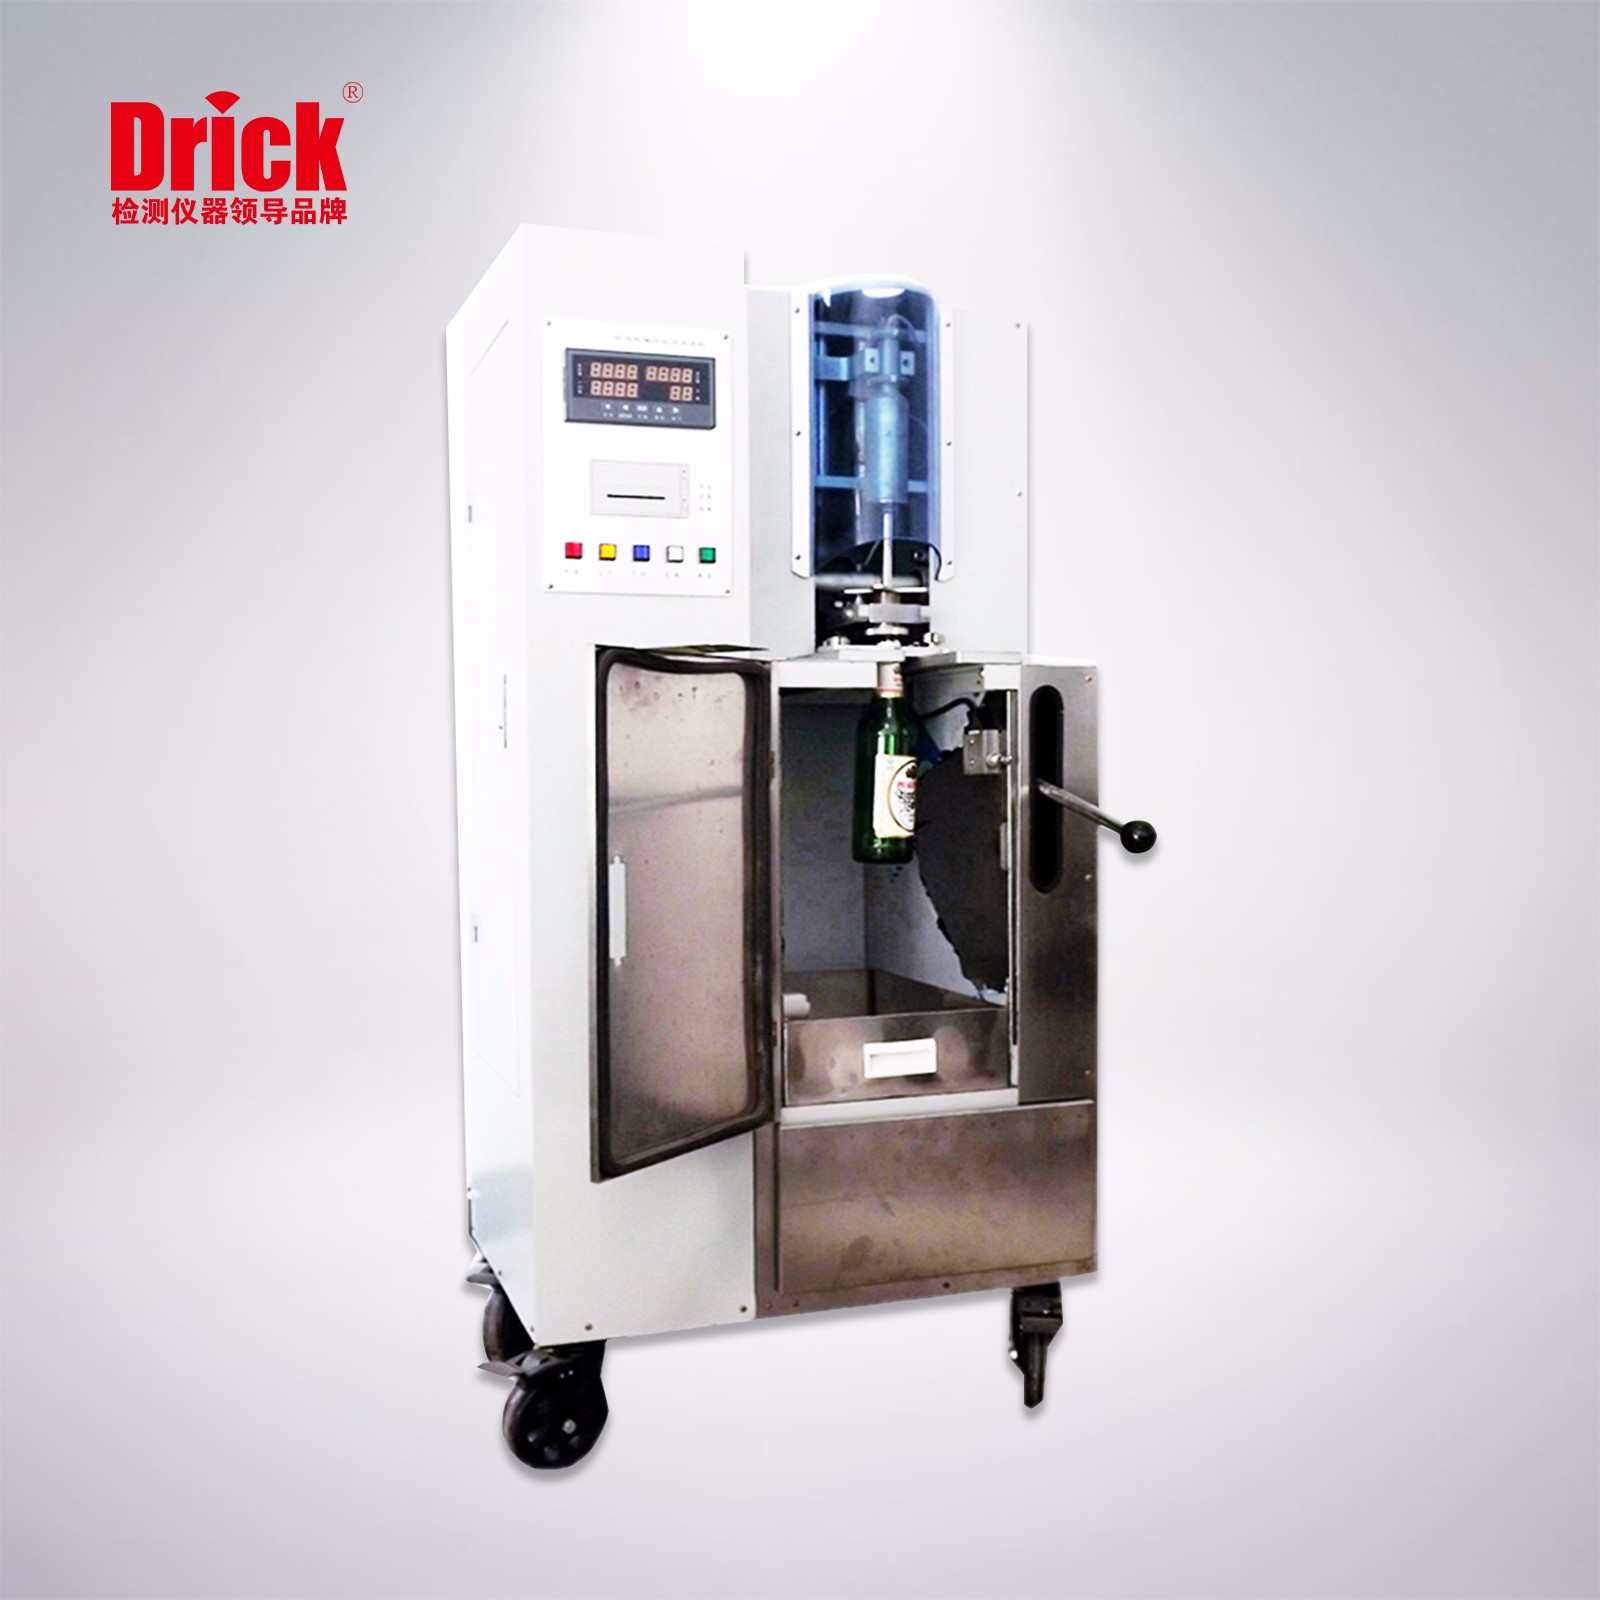 DRK514玻璃瓶耐内压力试验机.jpg